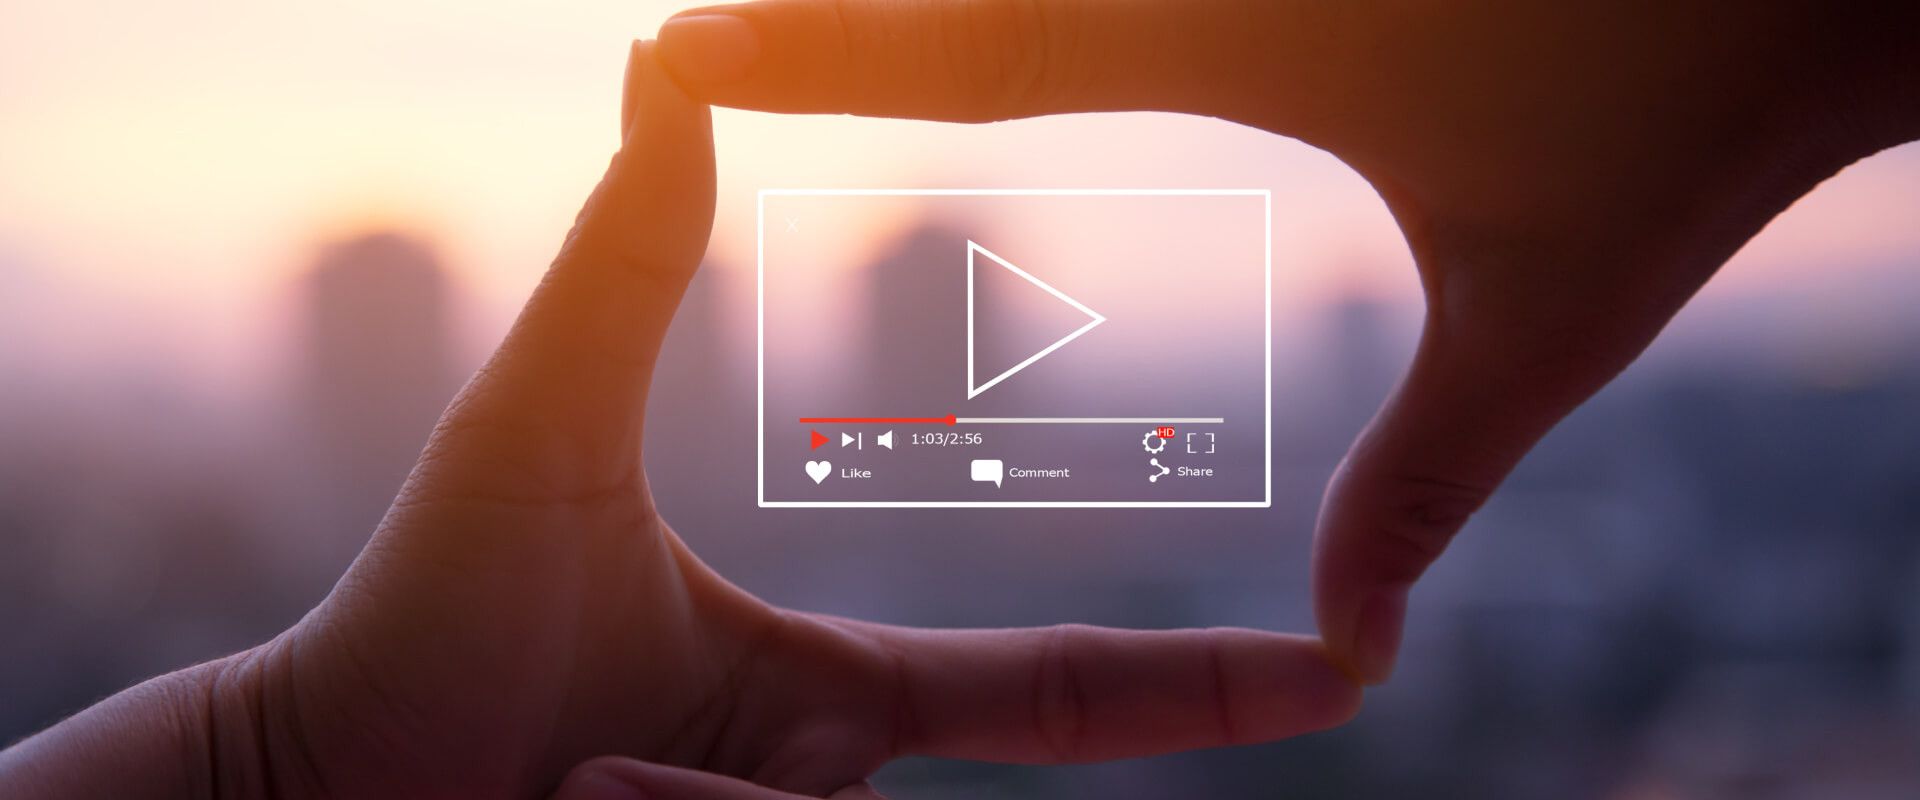 Tối ưu hóa định dạng và nội dung cho video marketing